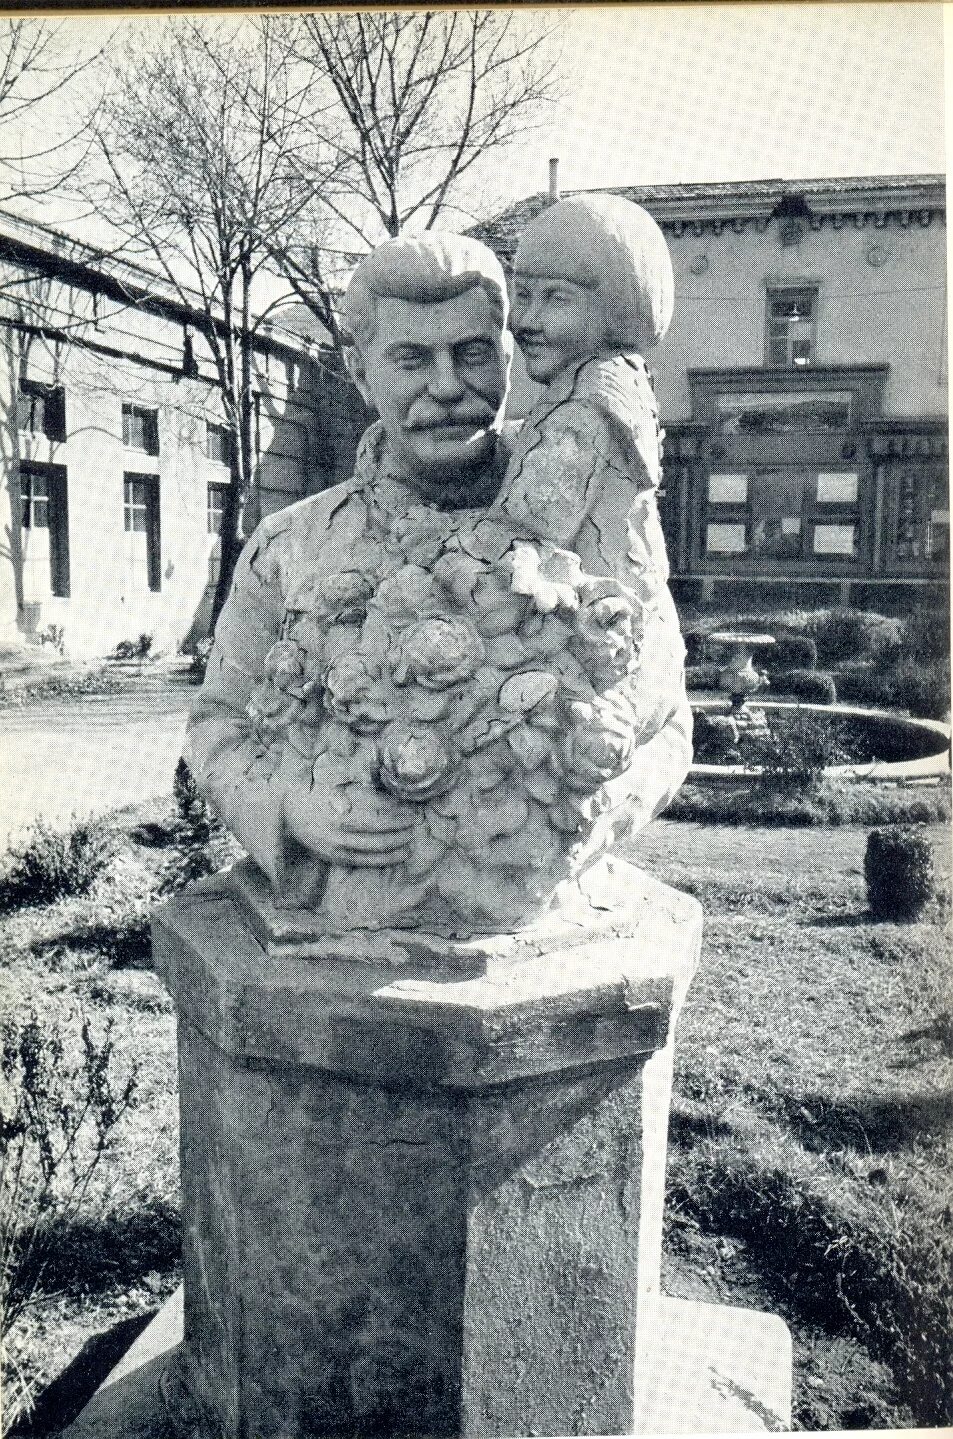 Скульптура Сталин и геля скульптор Лавров. Памятник счастливое детство. 1936 год геля маркизова